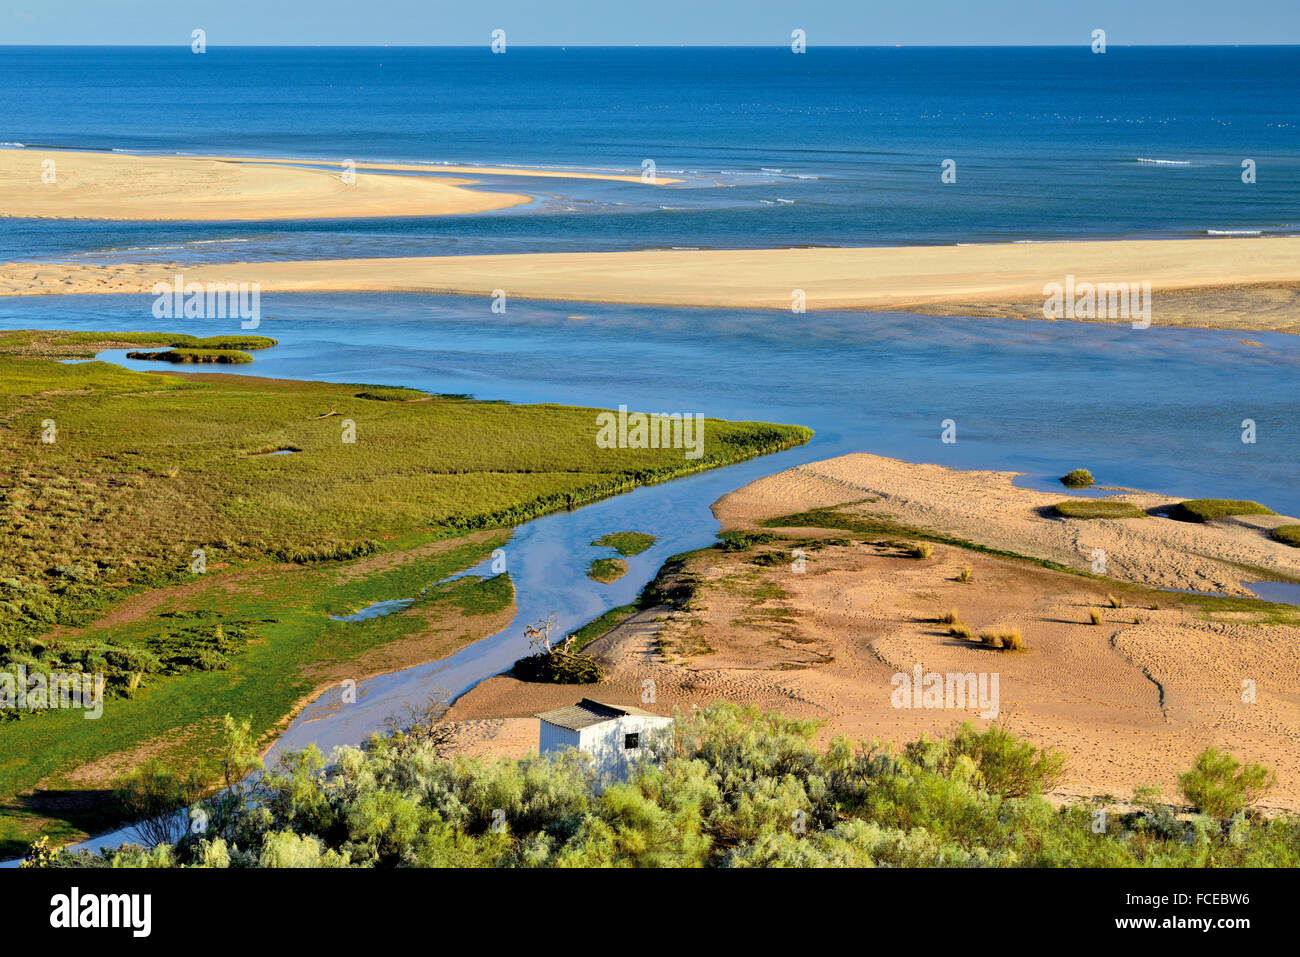 Portugal, Algarve: vista a las islas y bancos de arena del Parque Natural de Ria Formosa Foto de stock